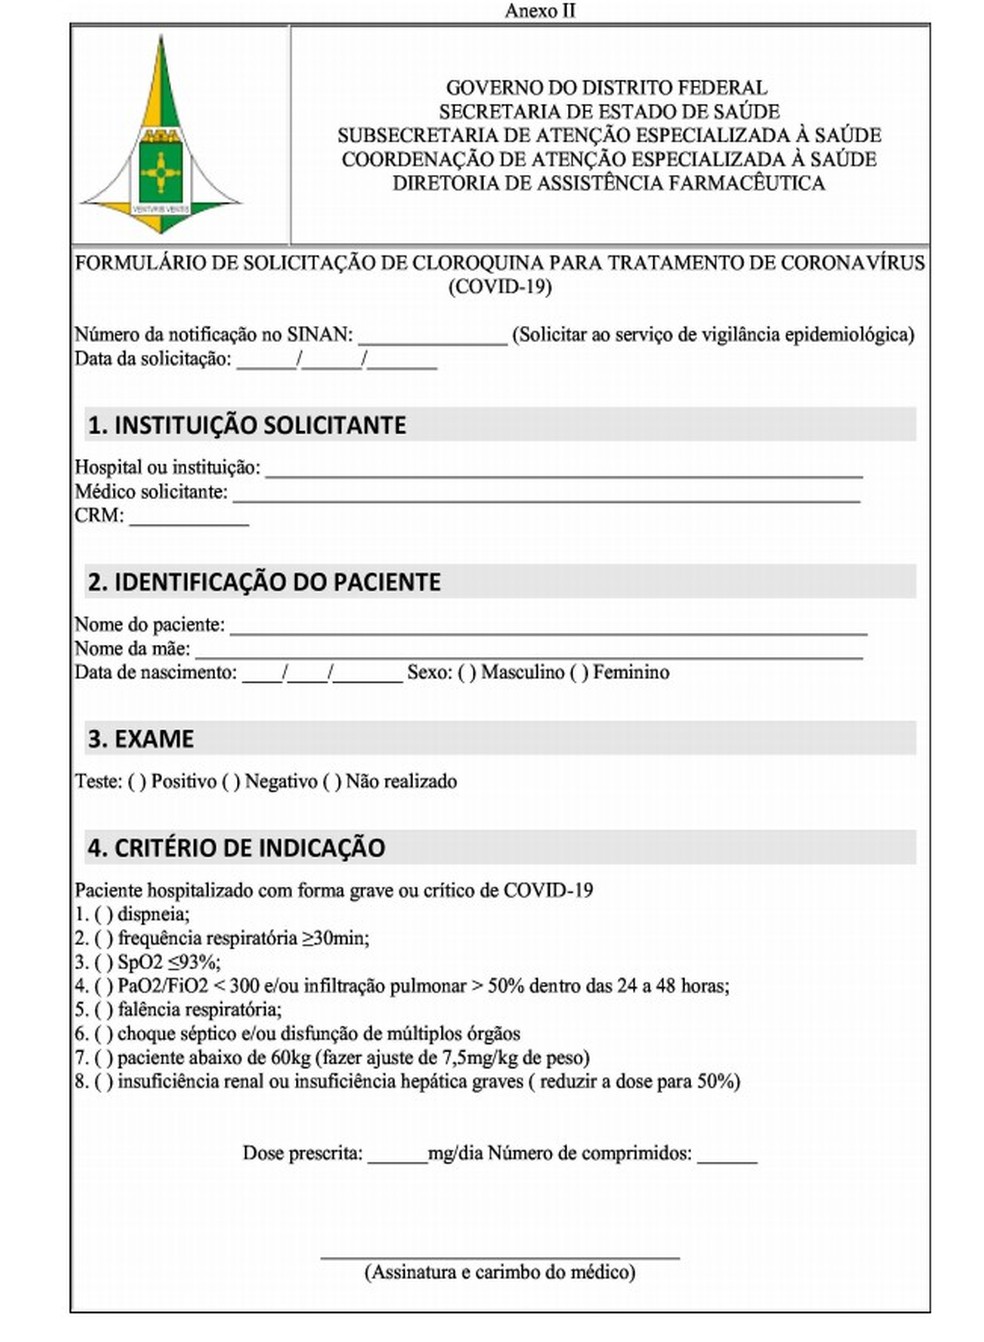 Termo de consentimento para uso da cloroquina contra Covid-19 no DF — Foto: SES-DF/Reprodução